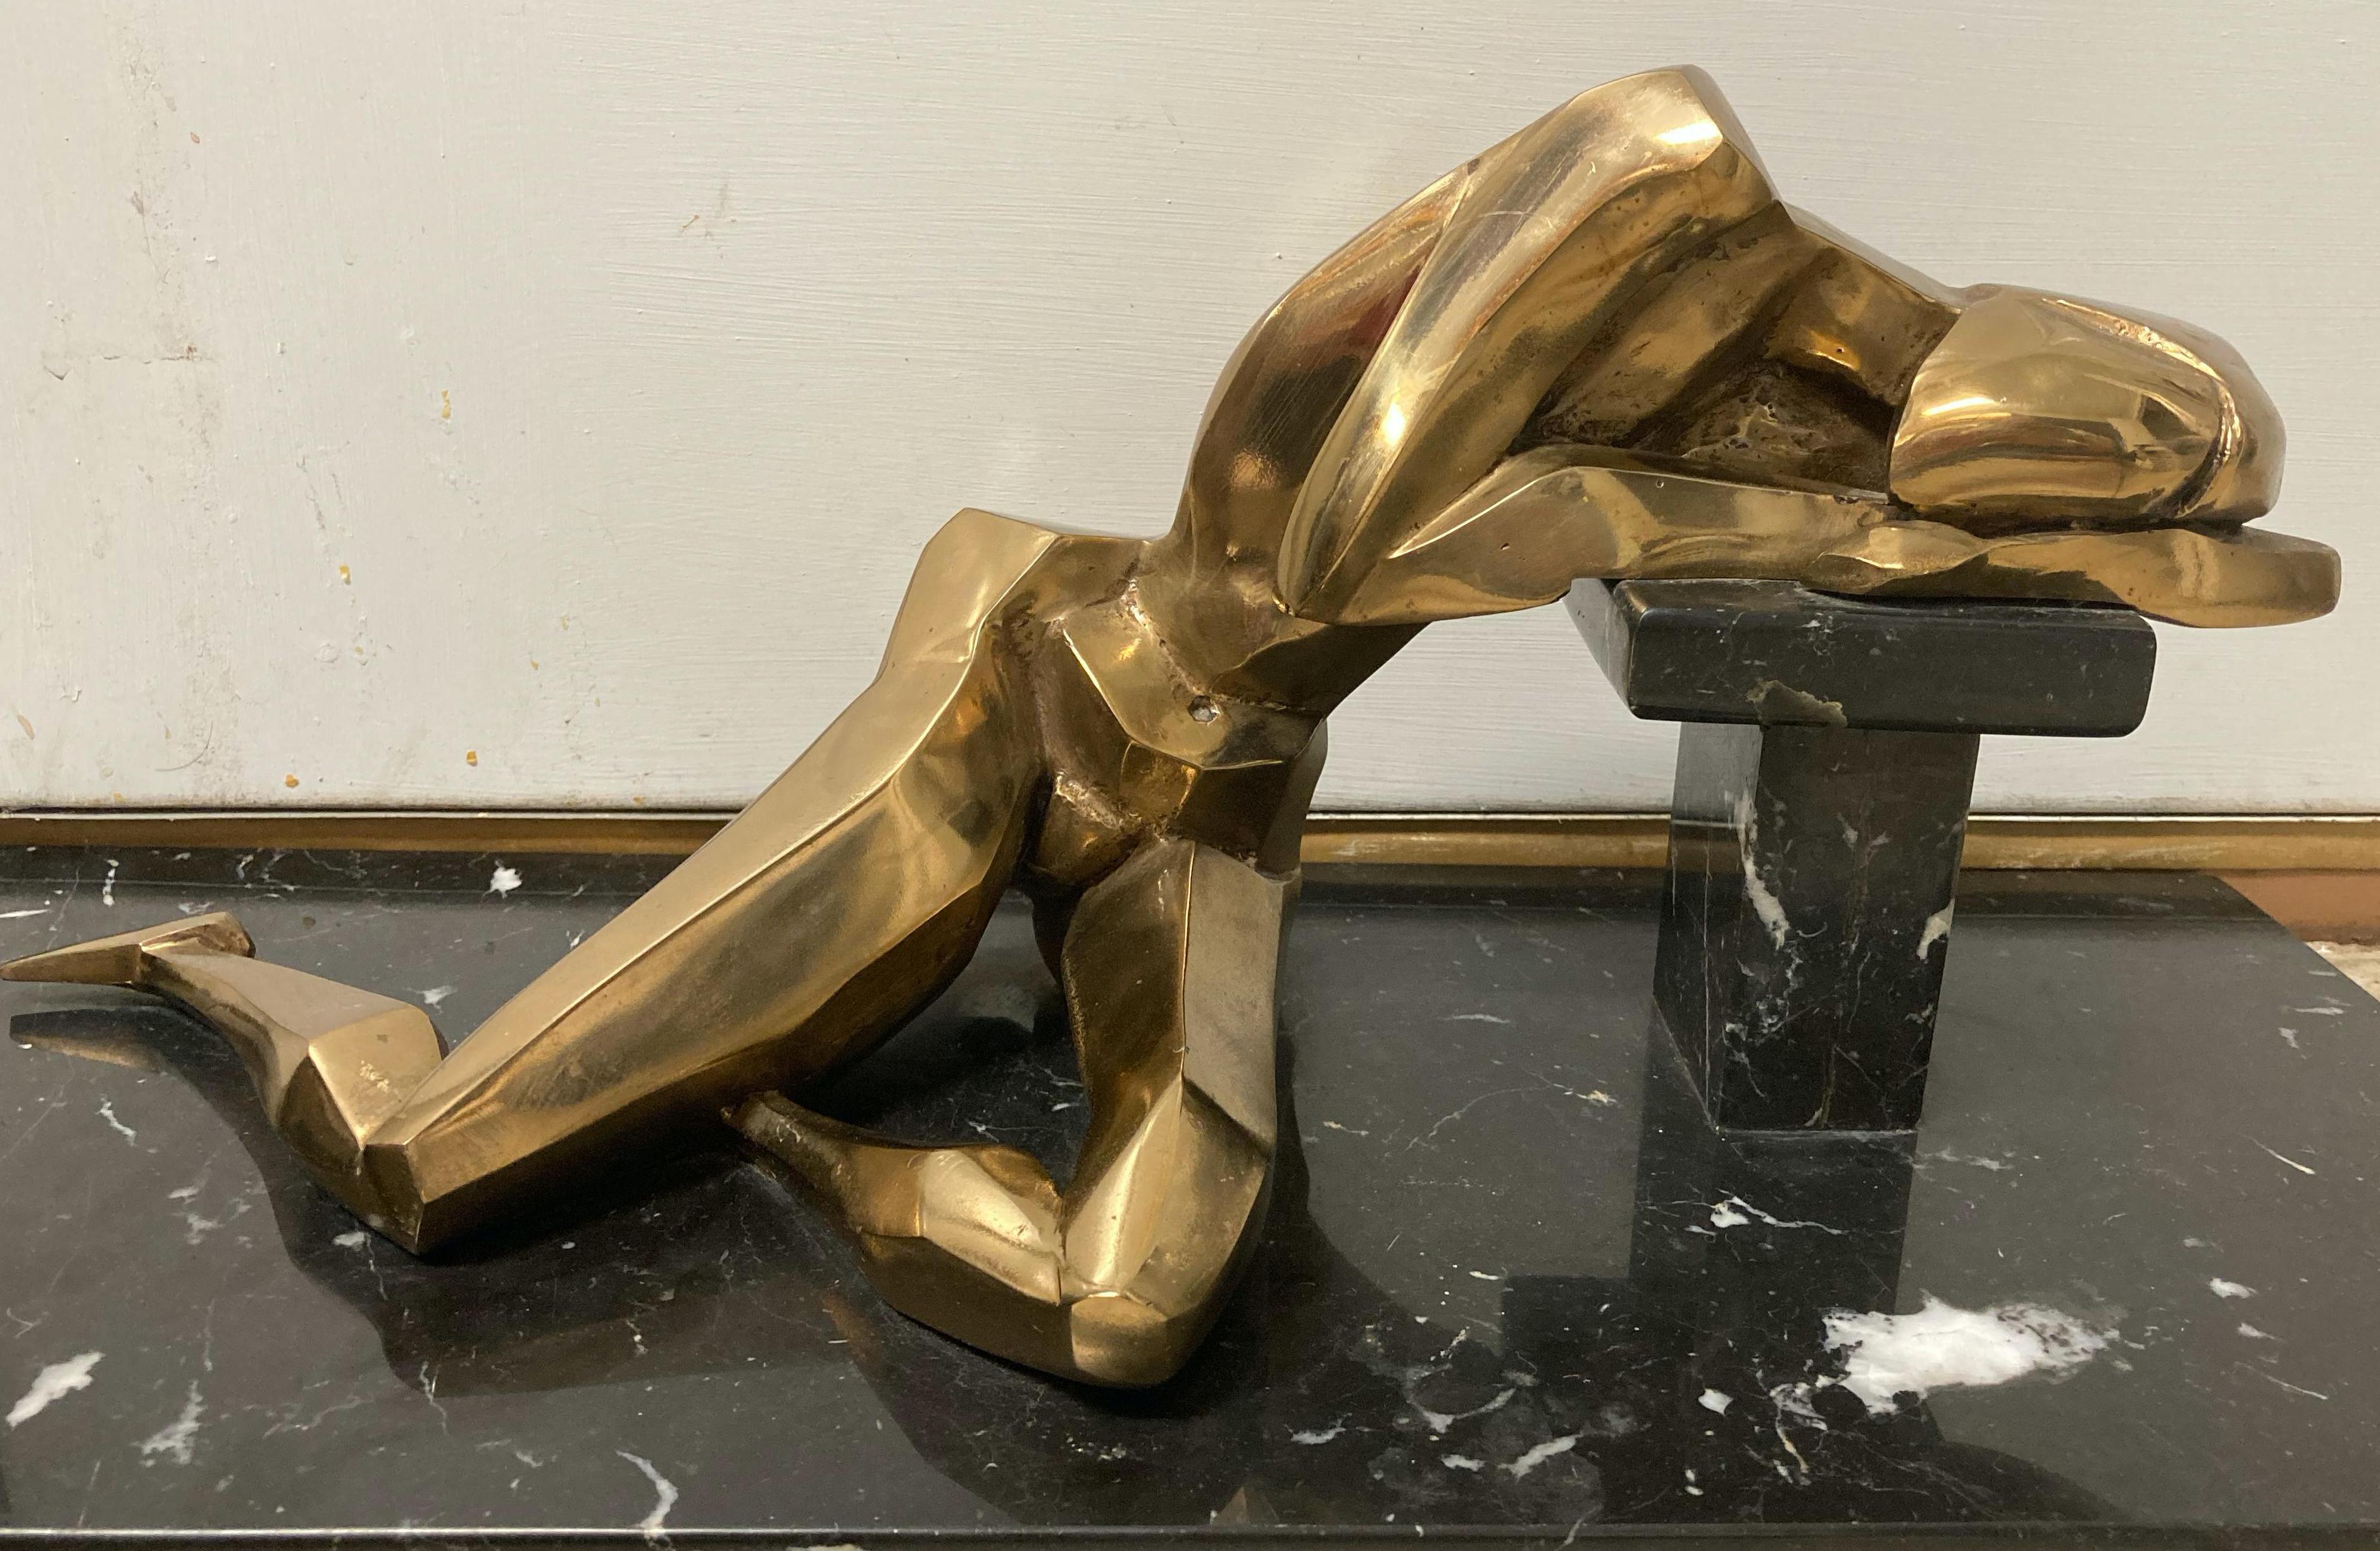 Sandra Zahn Oreck Nude Sculpture - Amanda